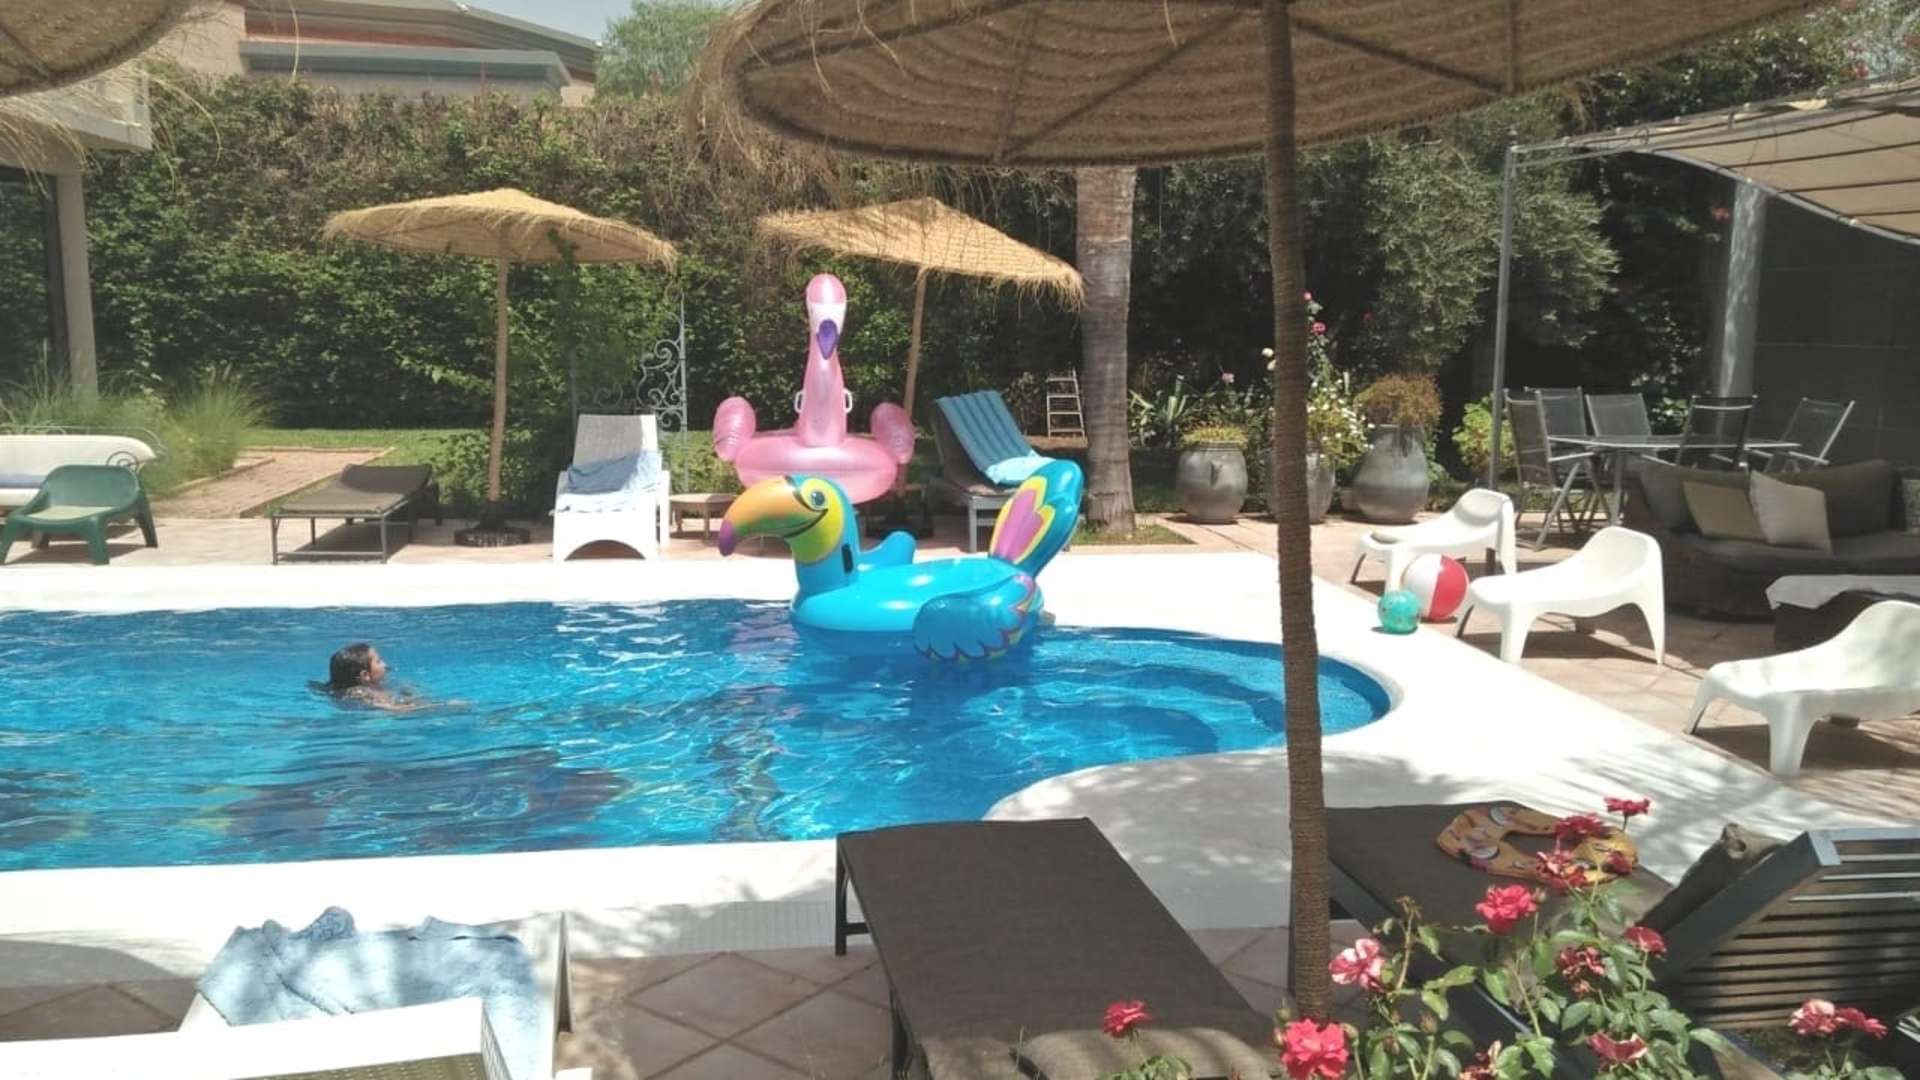 Location de vacances,Villa,Magnifique villa 6 chambres en première ligne sur le golf d'Amelkis à Marrakech,Marrakech,Amelkis Golf Resort